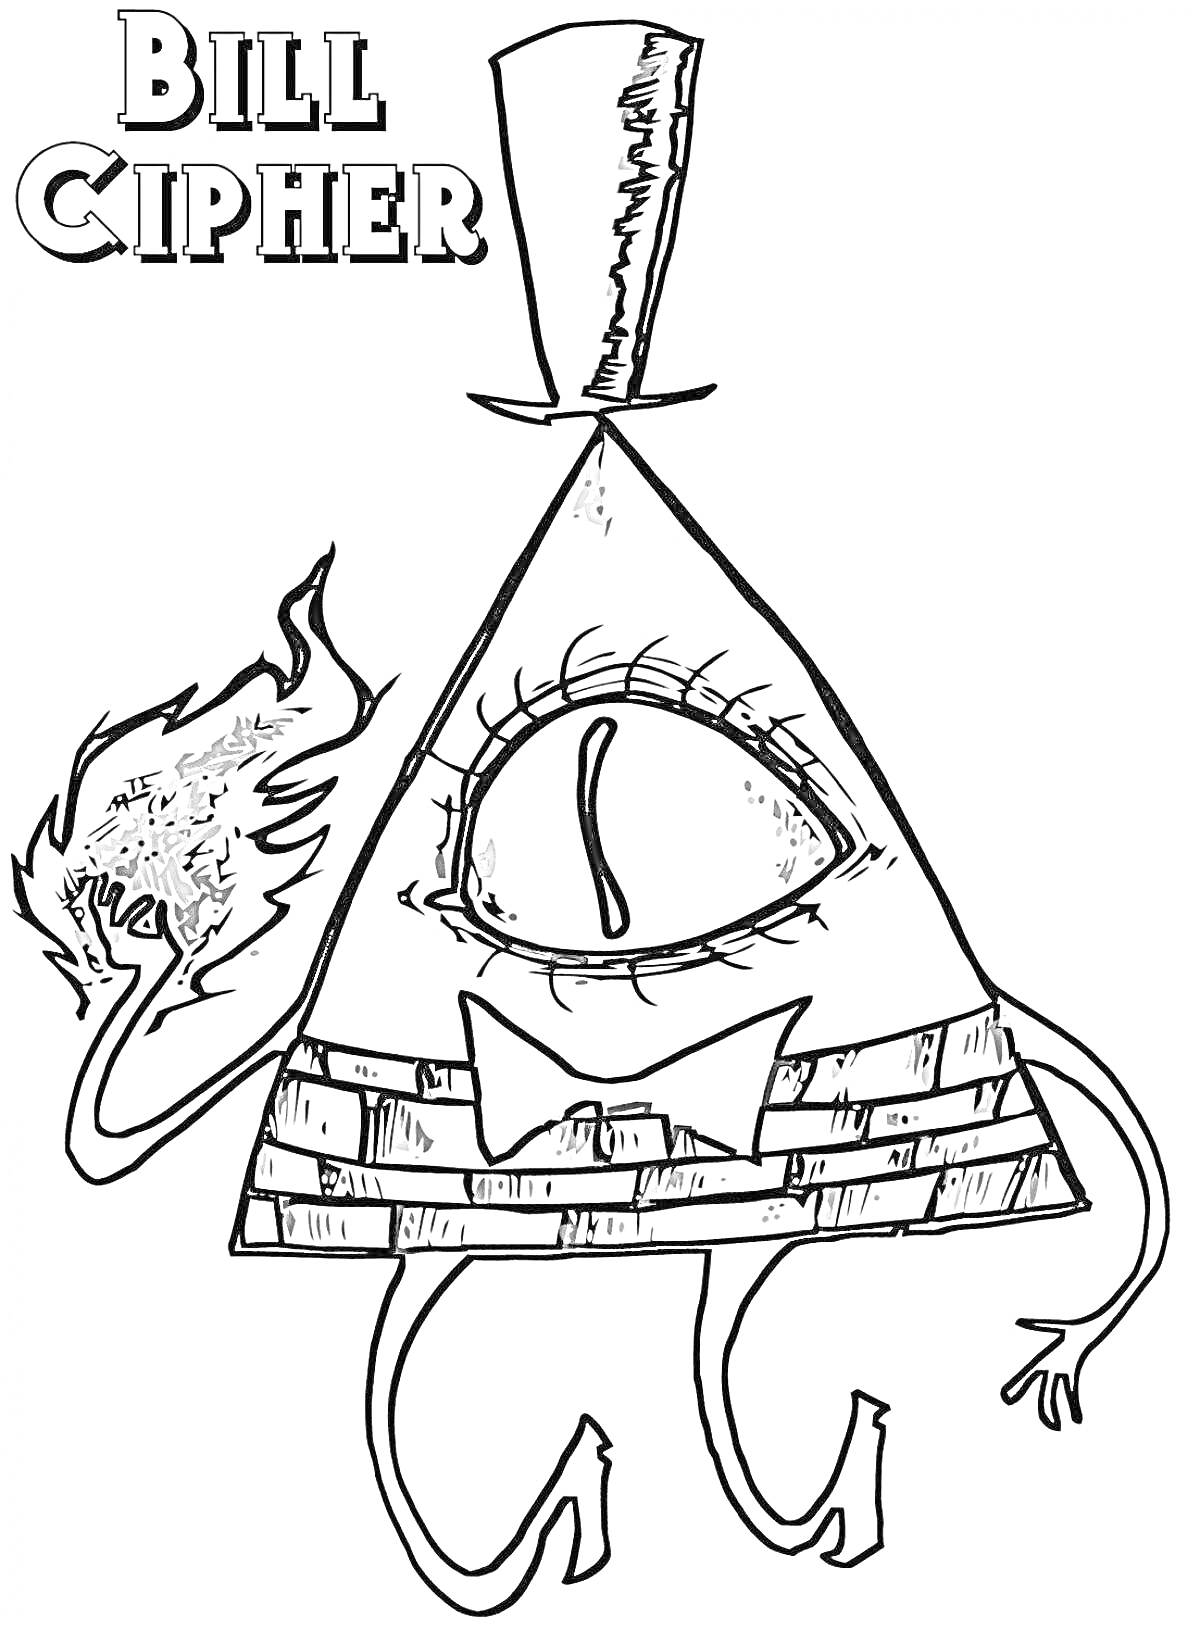 Раскраска Билл Шифр с оком, руками, ногами и огнем